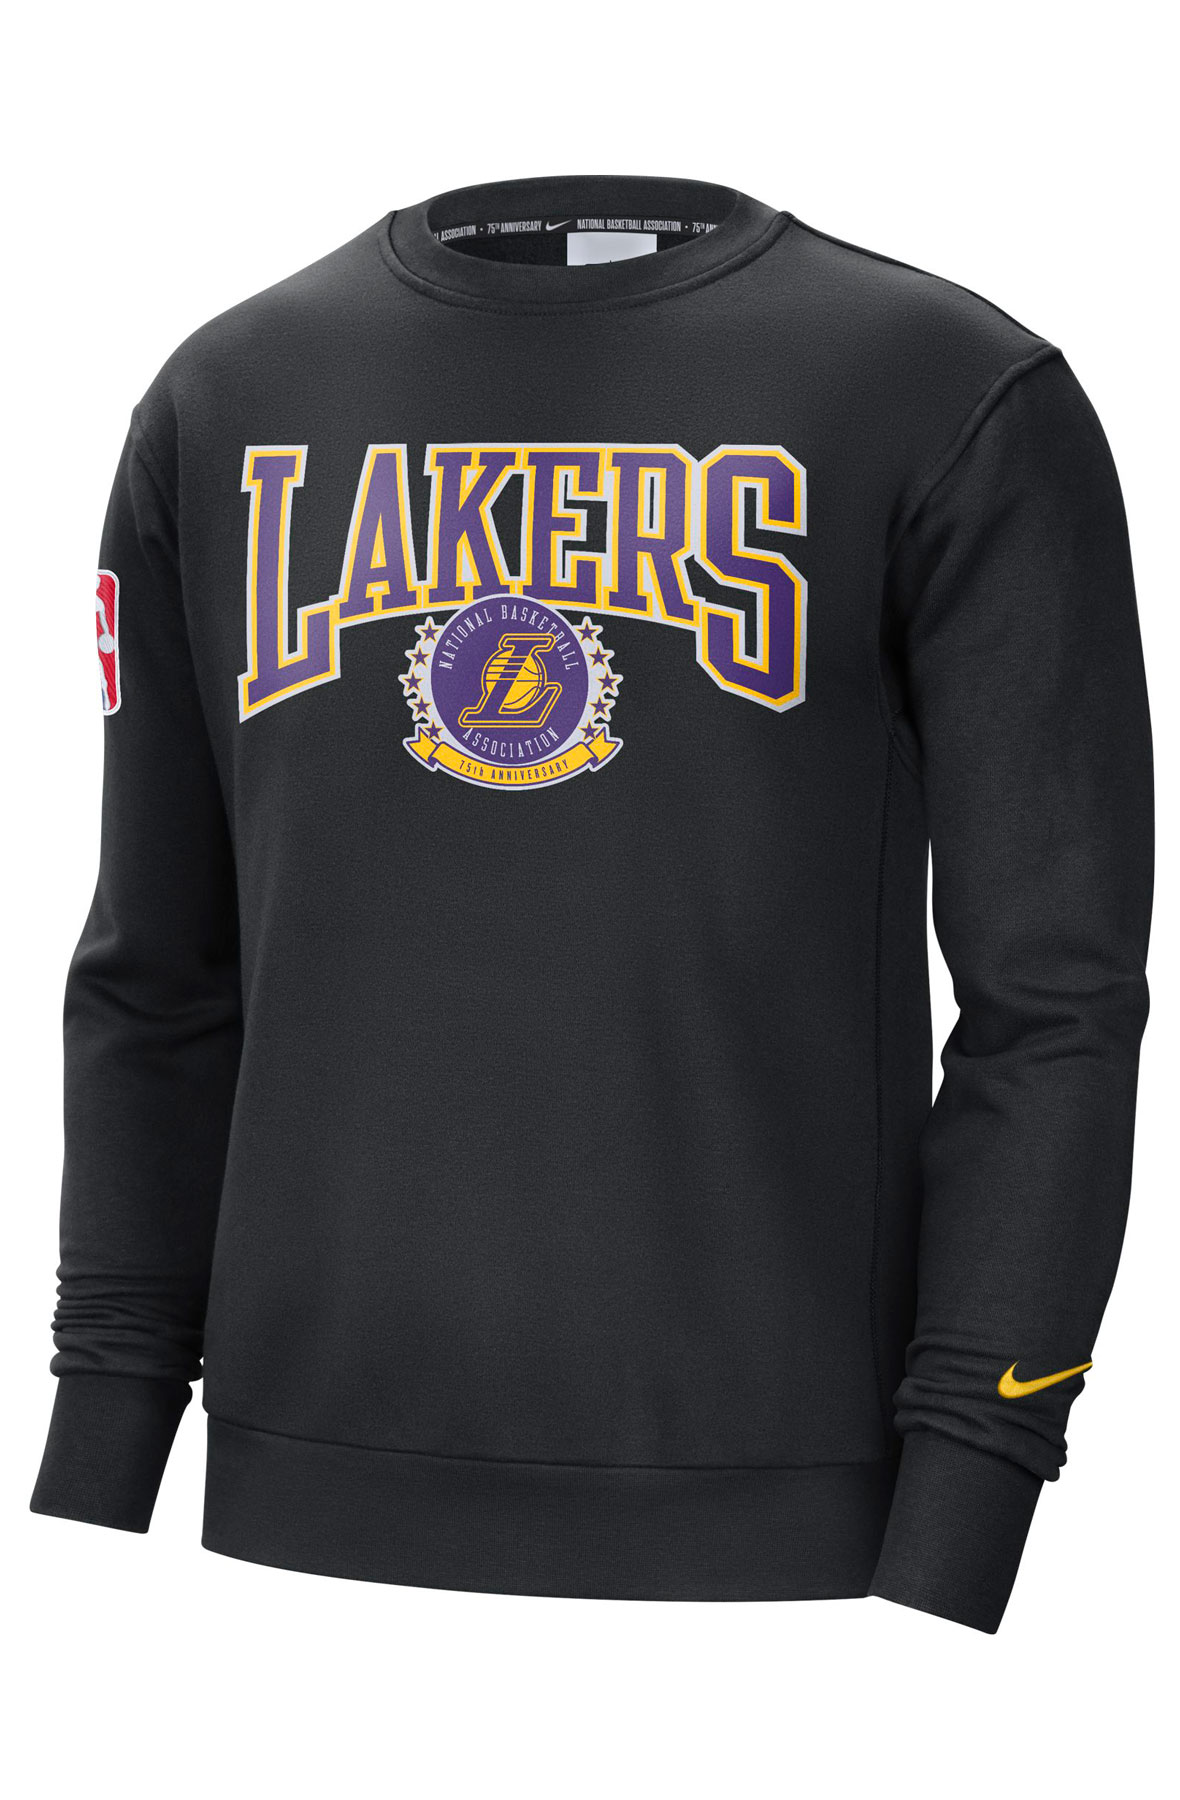 Mens Los Angeles Lakers Hoodie, Lakers Sweatshirts, Lakers Fleece